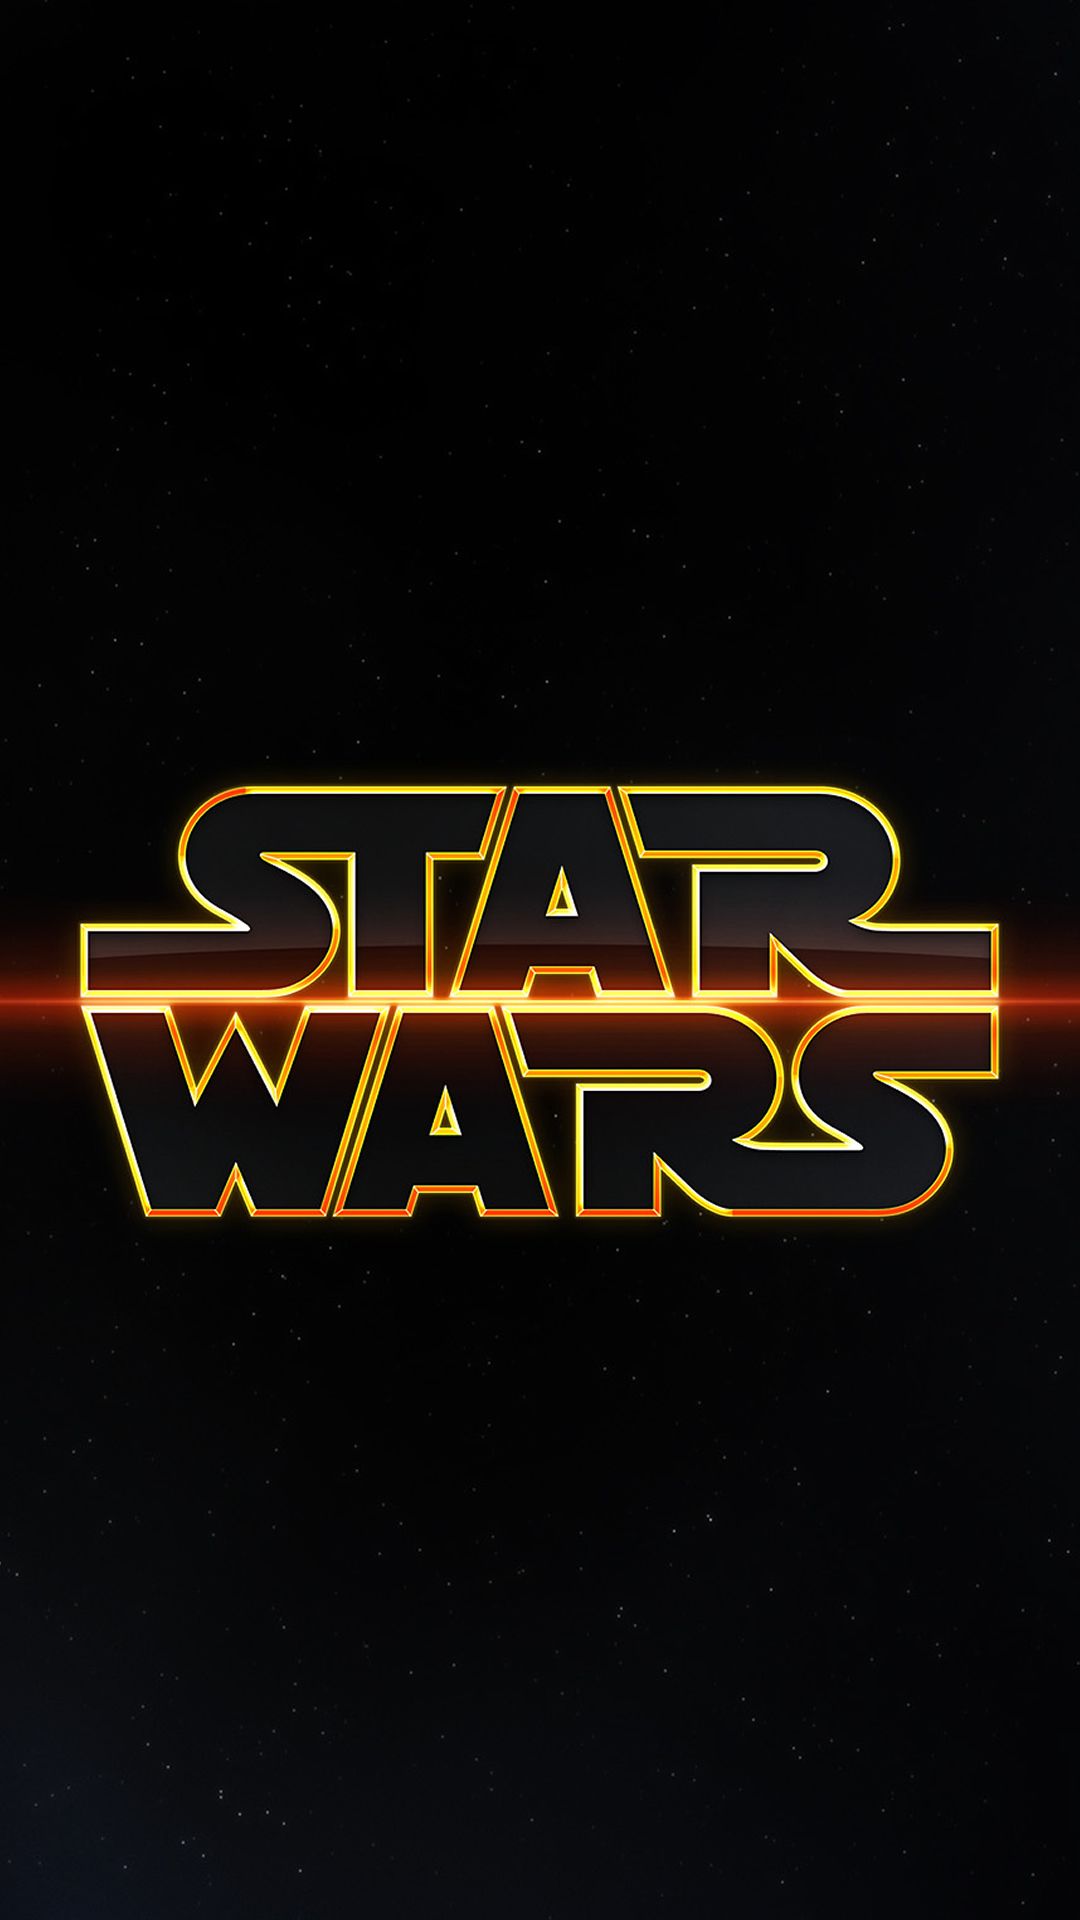 Star Wars Design Art iPhone 6 Wallpaper Download | iPhone ...